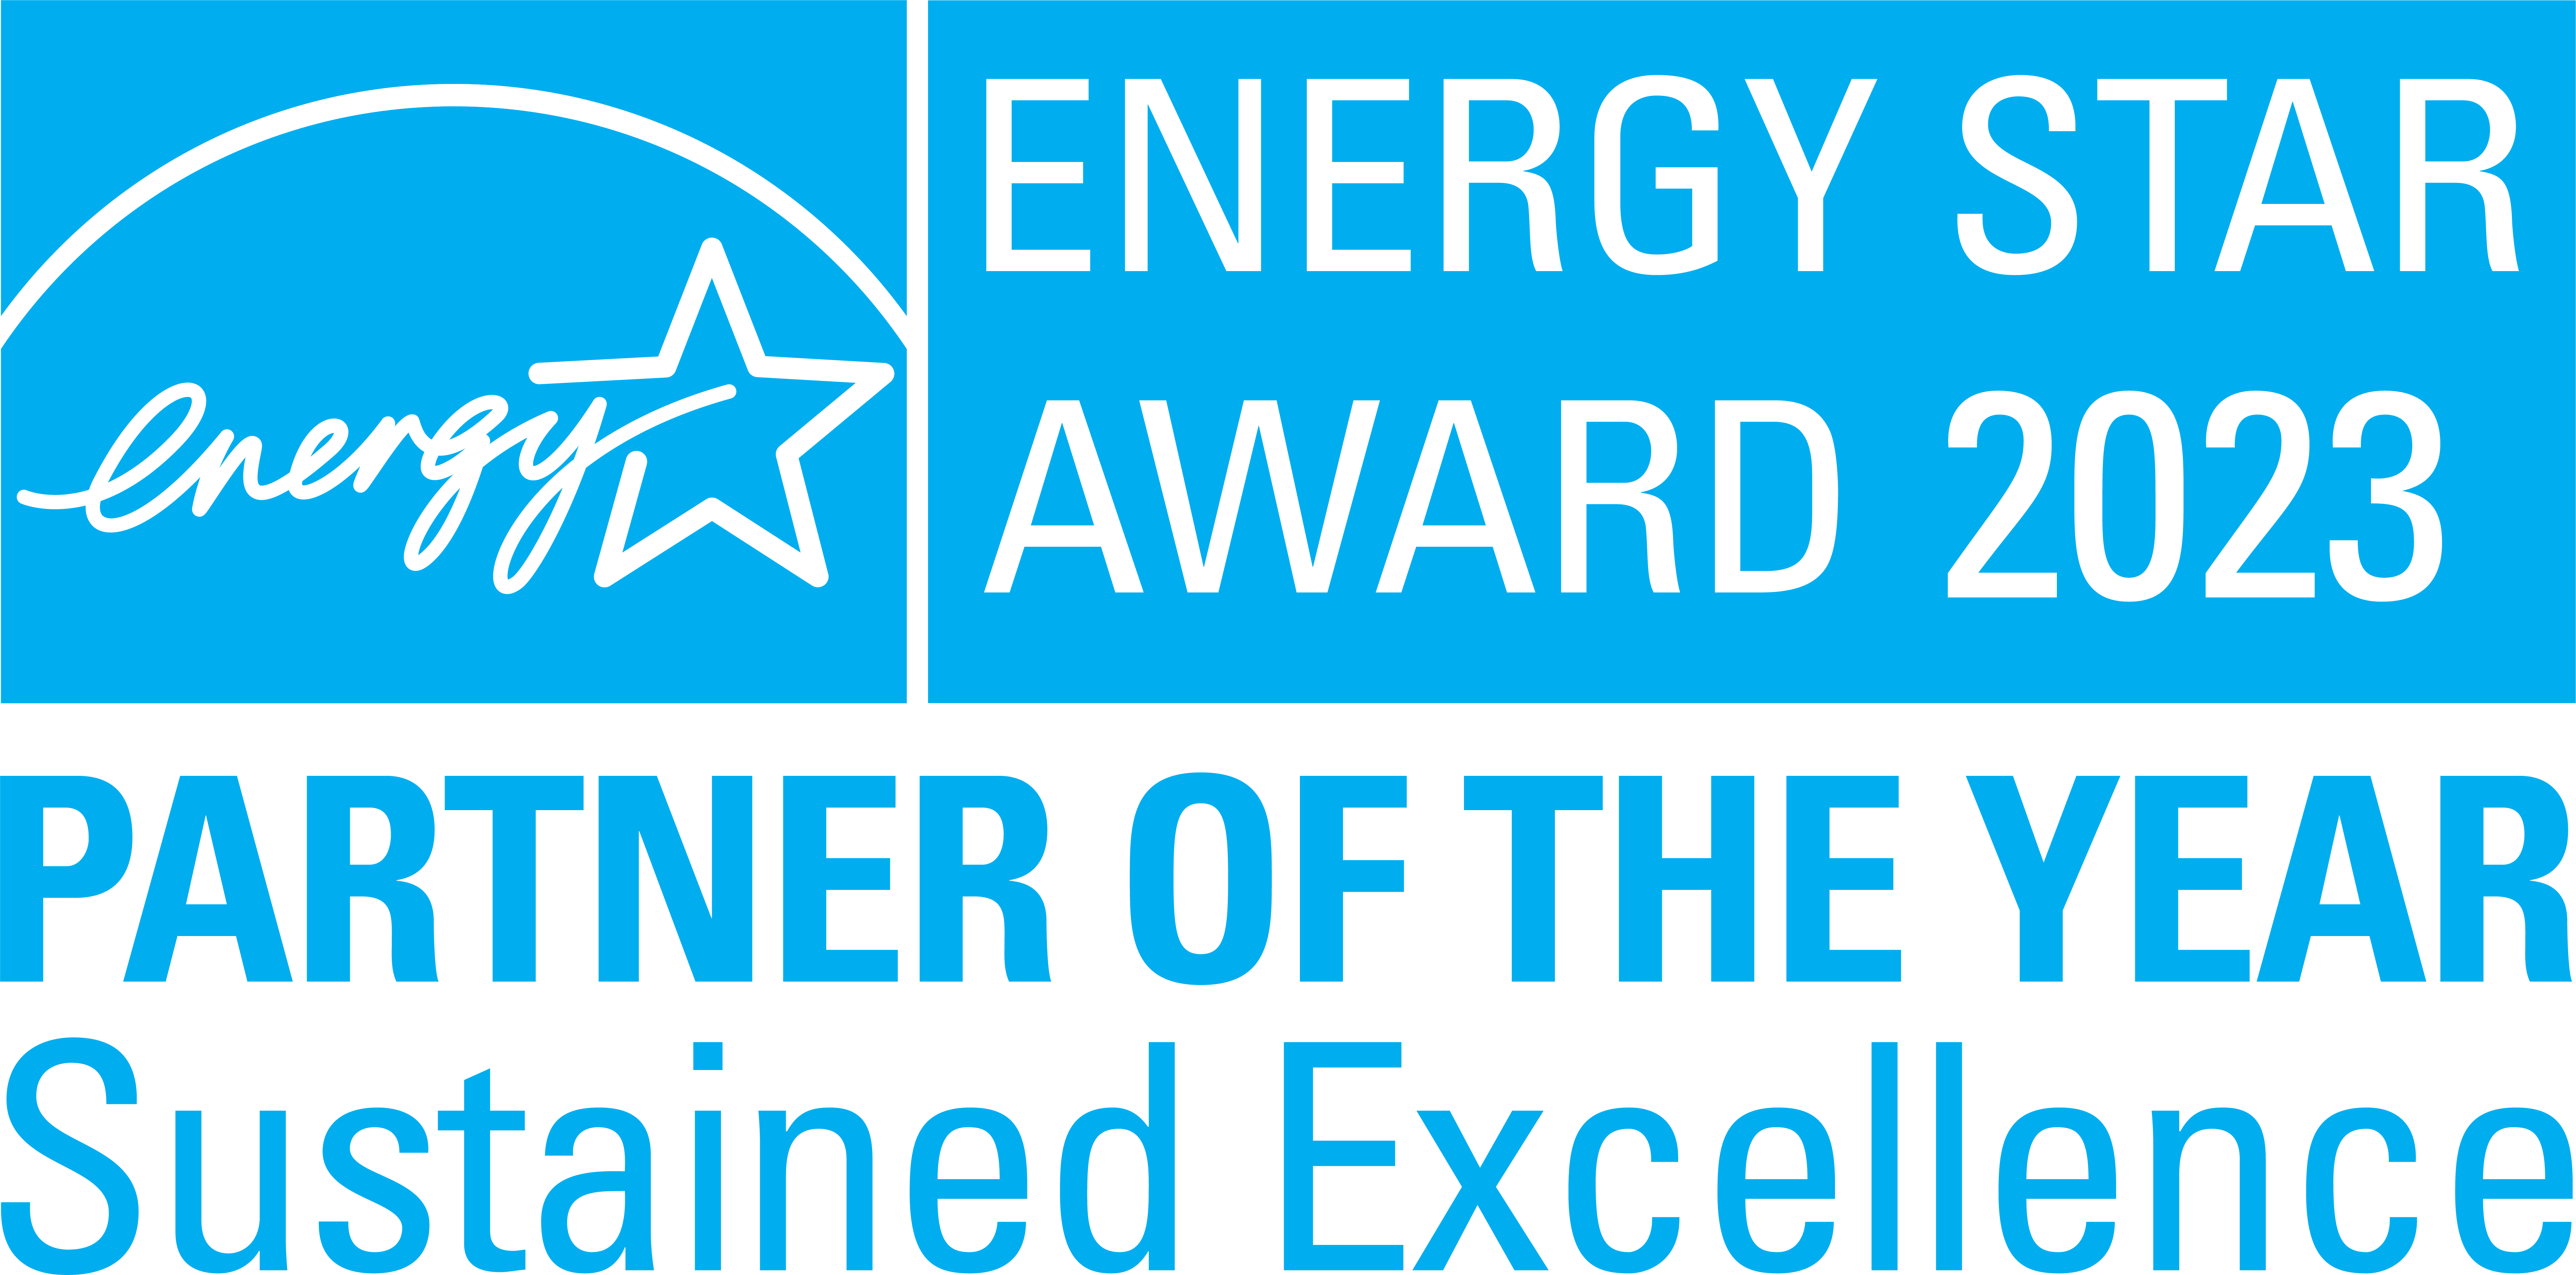 能源之星奖。2023年的合作伙伴。持续的卓越。